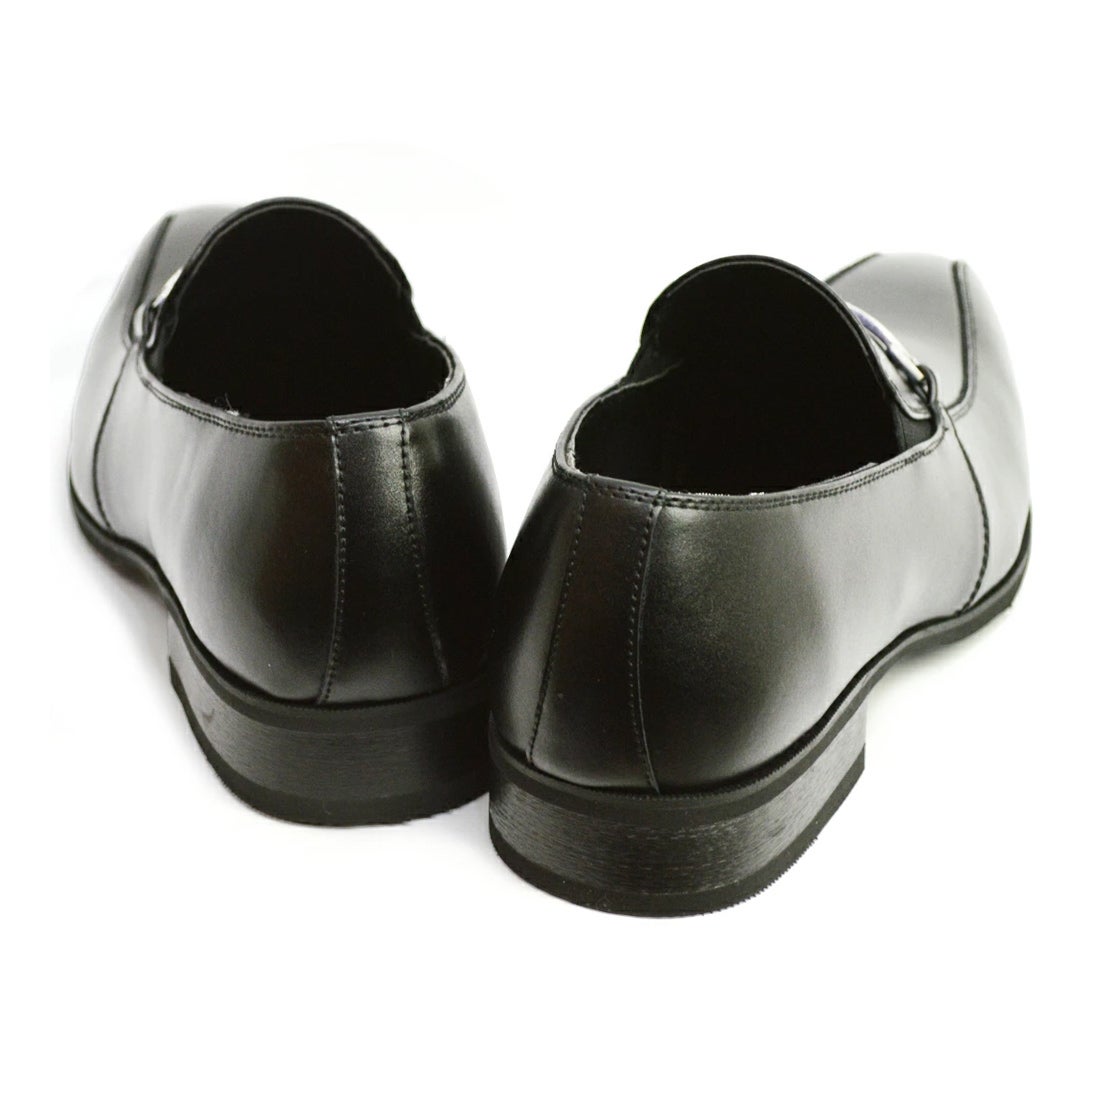 キンロック バイ キンロックアンダーソン Kinloch by Kinloch Anderson ビジネスシューズ メンズ 日本製 本革 革靴